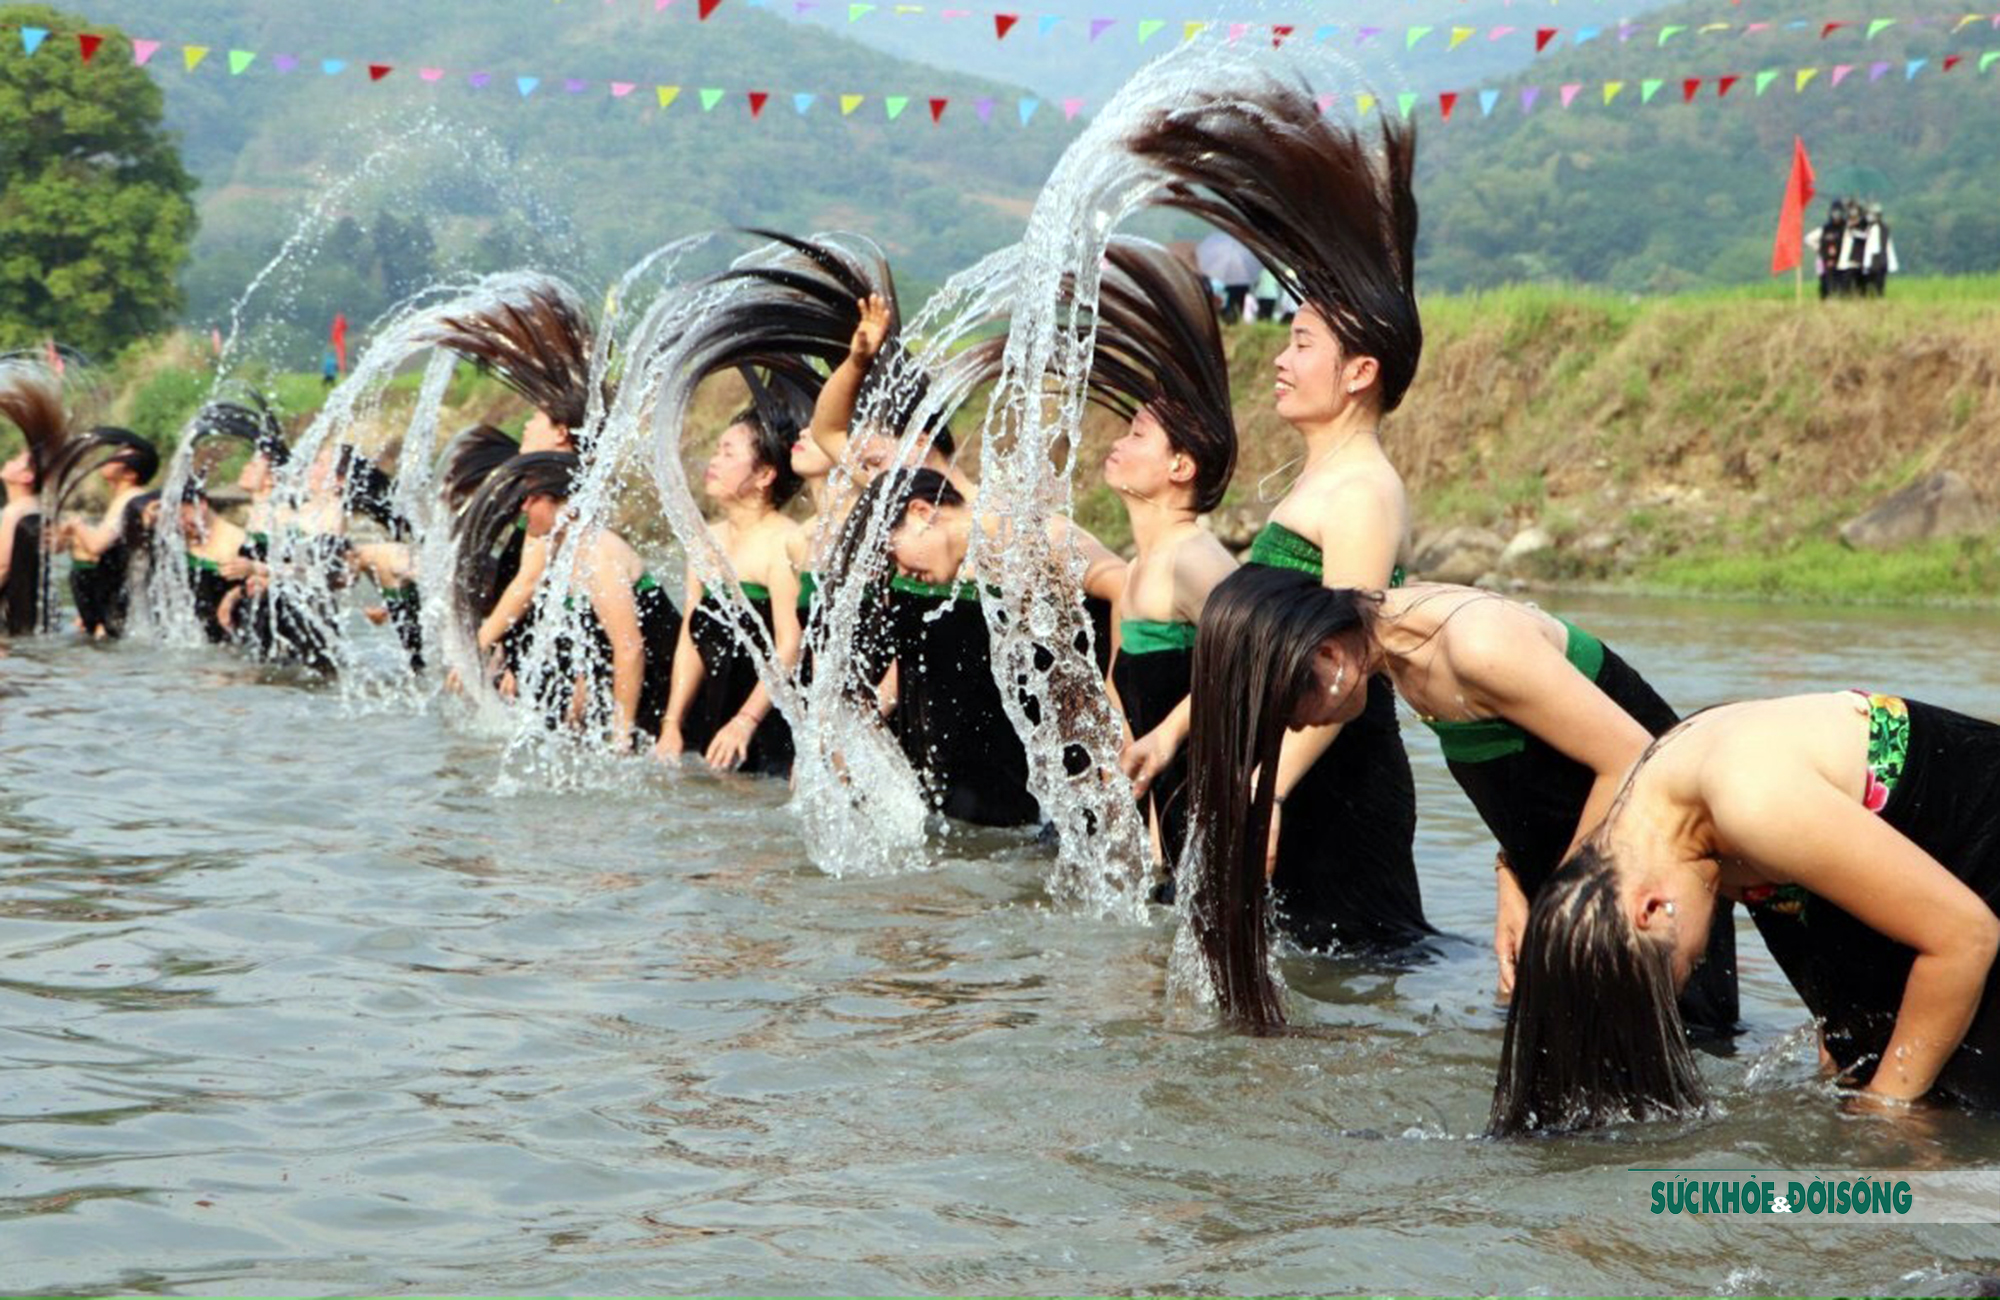 Hãy cùng đến với lễ hội té nước Phong Thổ để cảm nhận không khí hân hoan, vui tươi và đầy màu sắc của ngày hội. Xem qua những hình ảnh đậm chất dân tộc và trải nghiệm cảm giác đọng lại trong tim.